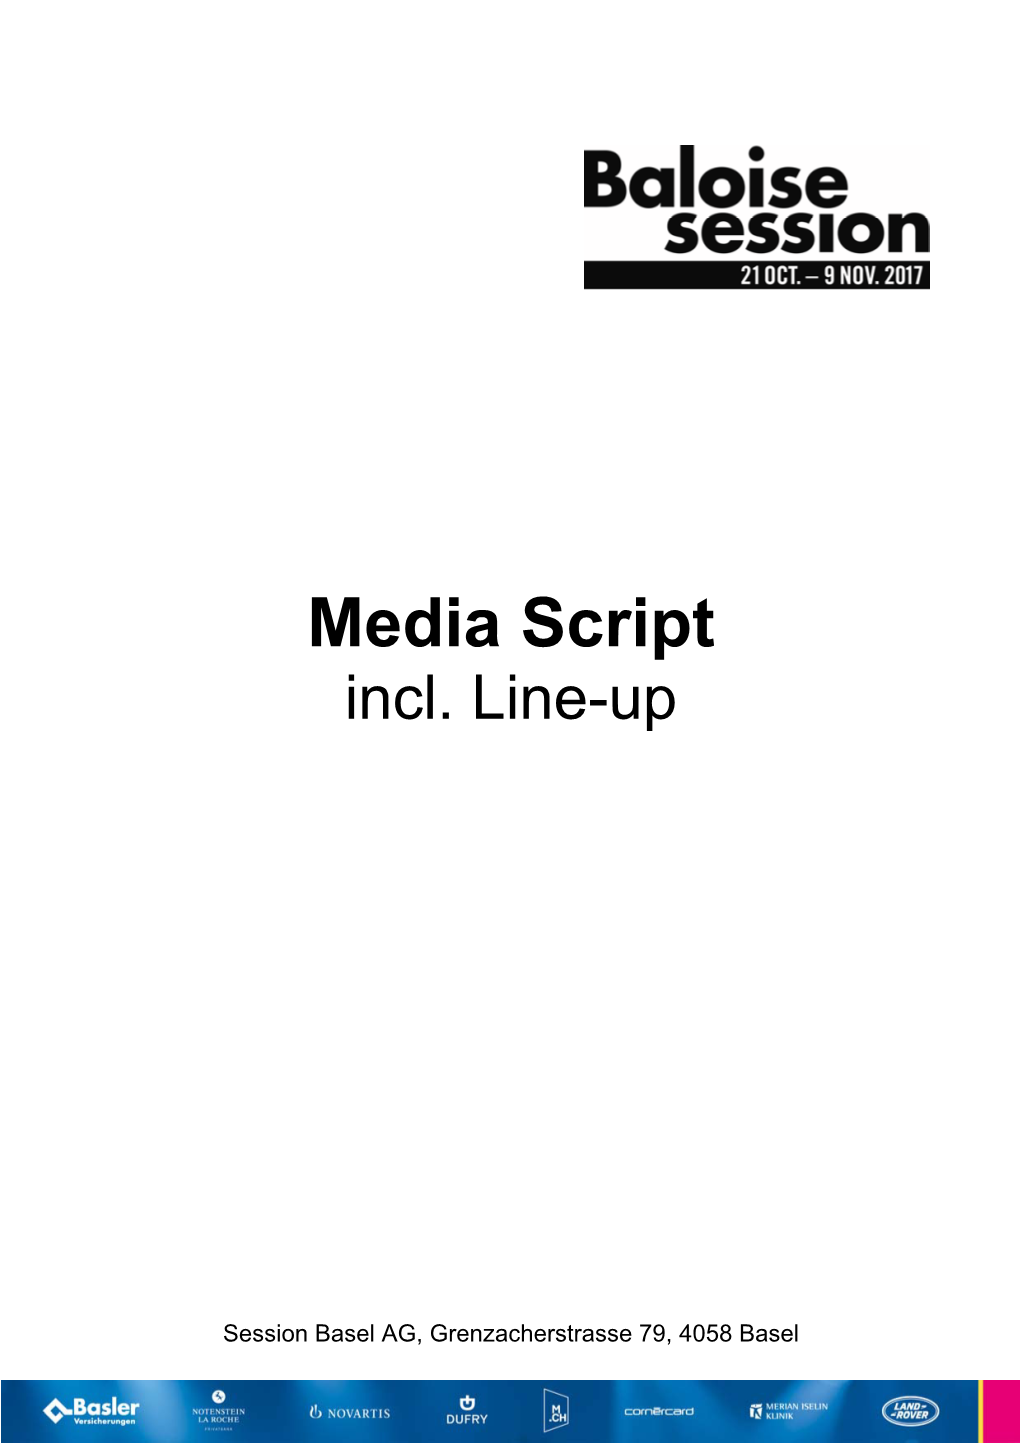 Media Script Incl